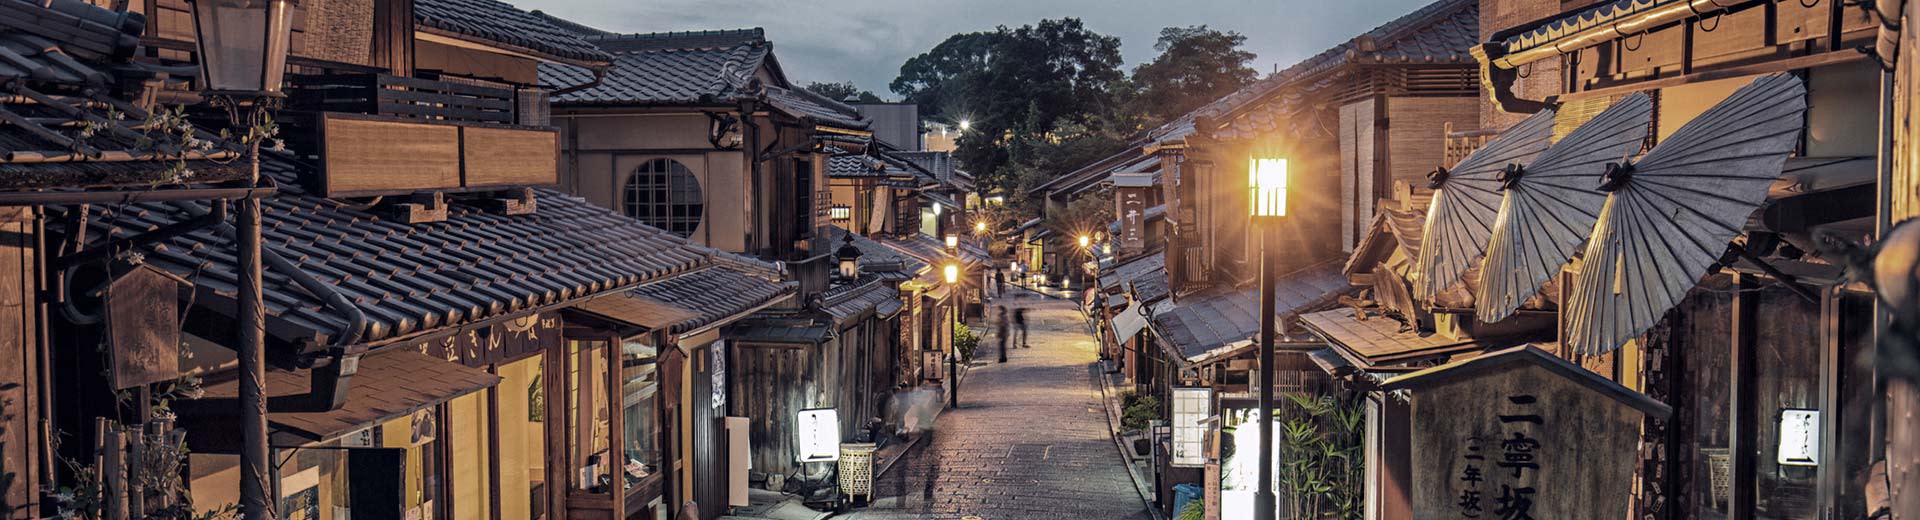 Dans la lumière du soir, une rue étroite bordé de vieux bâtiments avec des façades en bois à Kyoto.